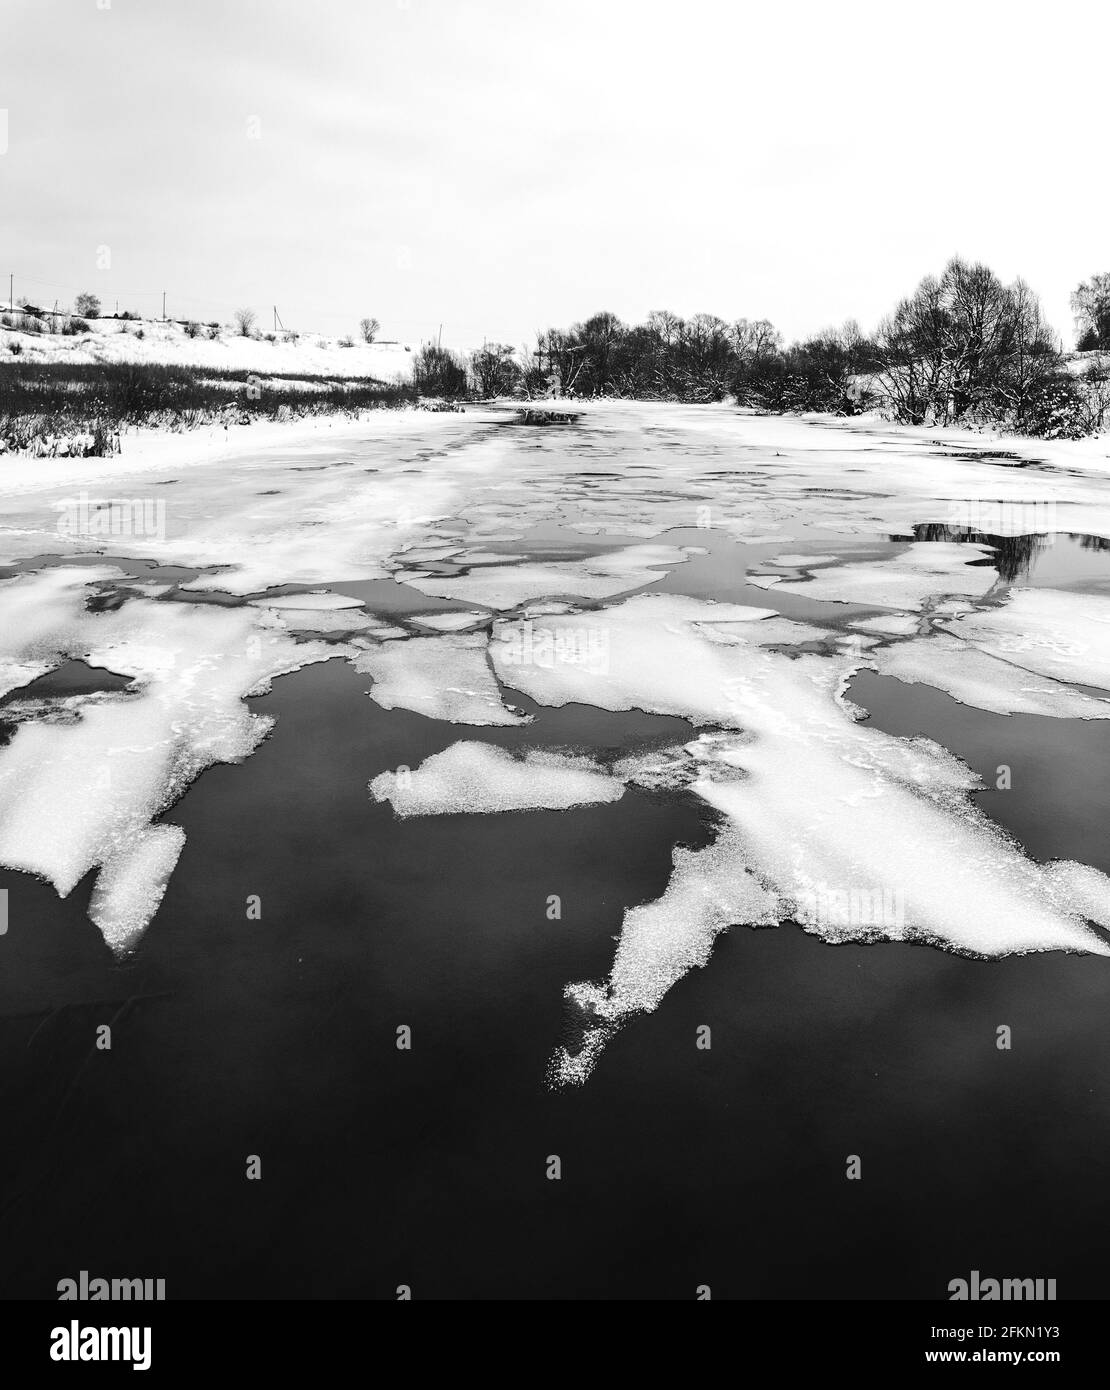 Schwarz-Weiß Panorama ländliche Winter- oder Frühlingslandschaft mit Schwimmend auf der Wasseroberfläche schmelzendes Eis Stockfoto